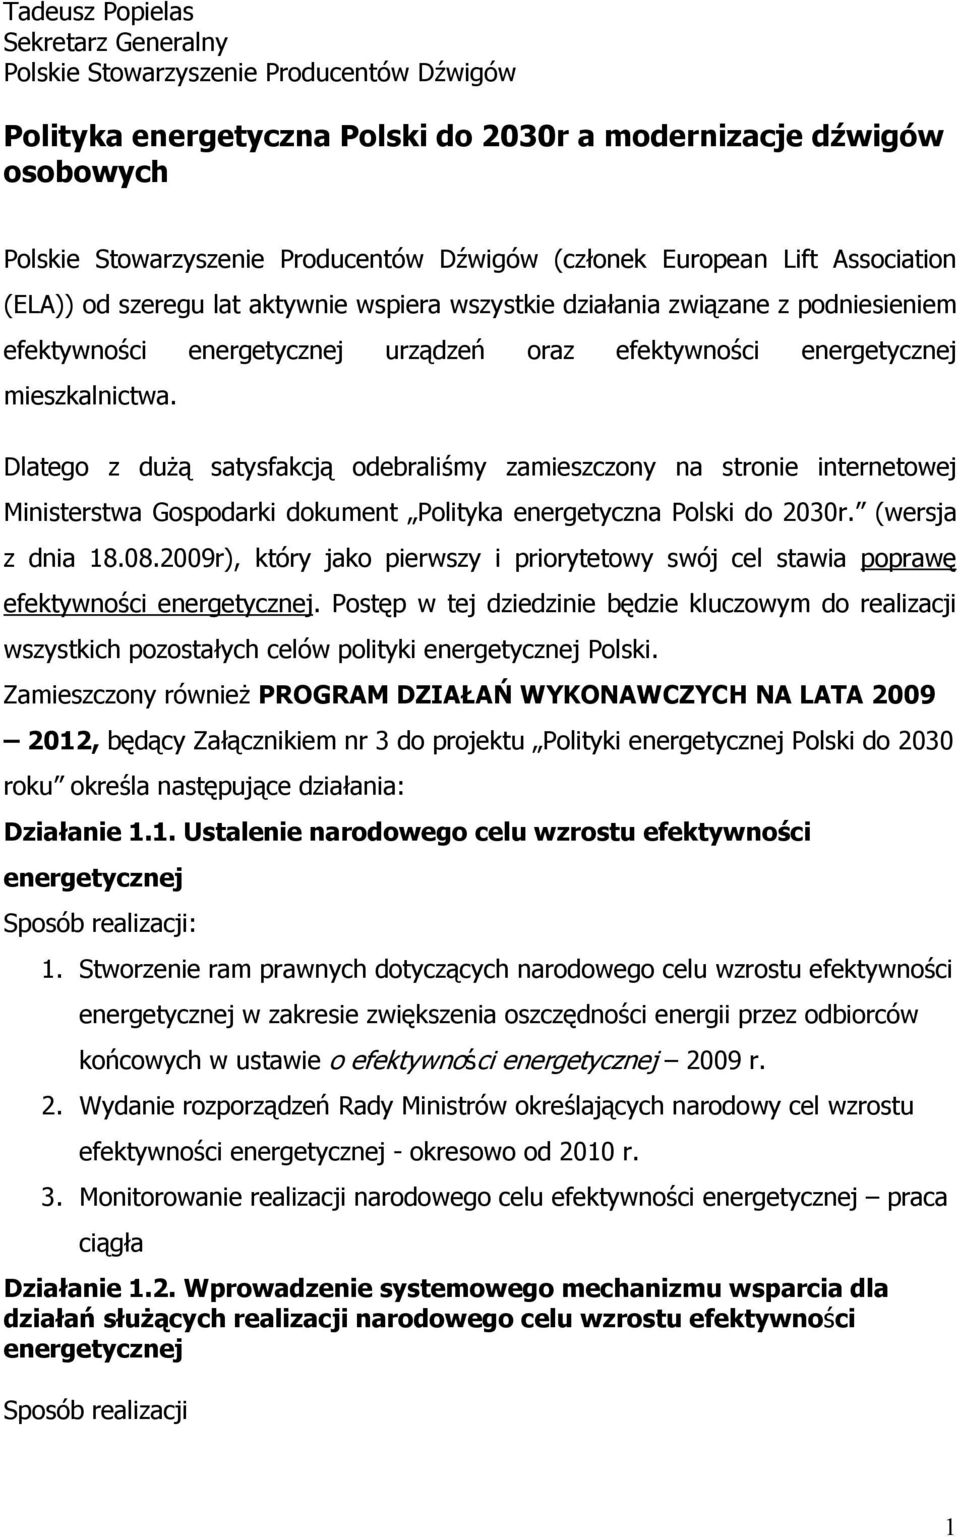 mieszkalnictwa. Dlatego z duŝą satysfakcją odebraliśmy zamieszczony na stronie internetowej Ministerstwa Gospodarki dokument Polityka energetyczna Polski do 2030r. (wersja z dnia 18.08.